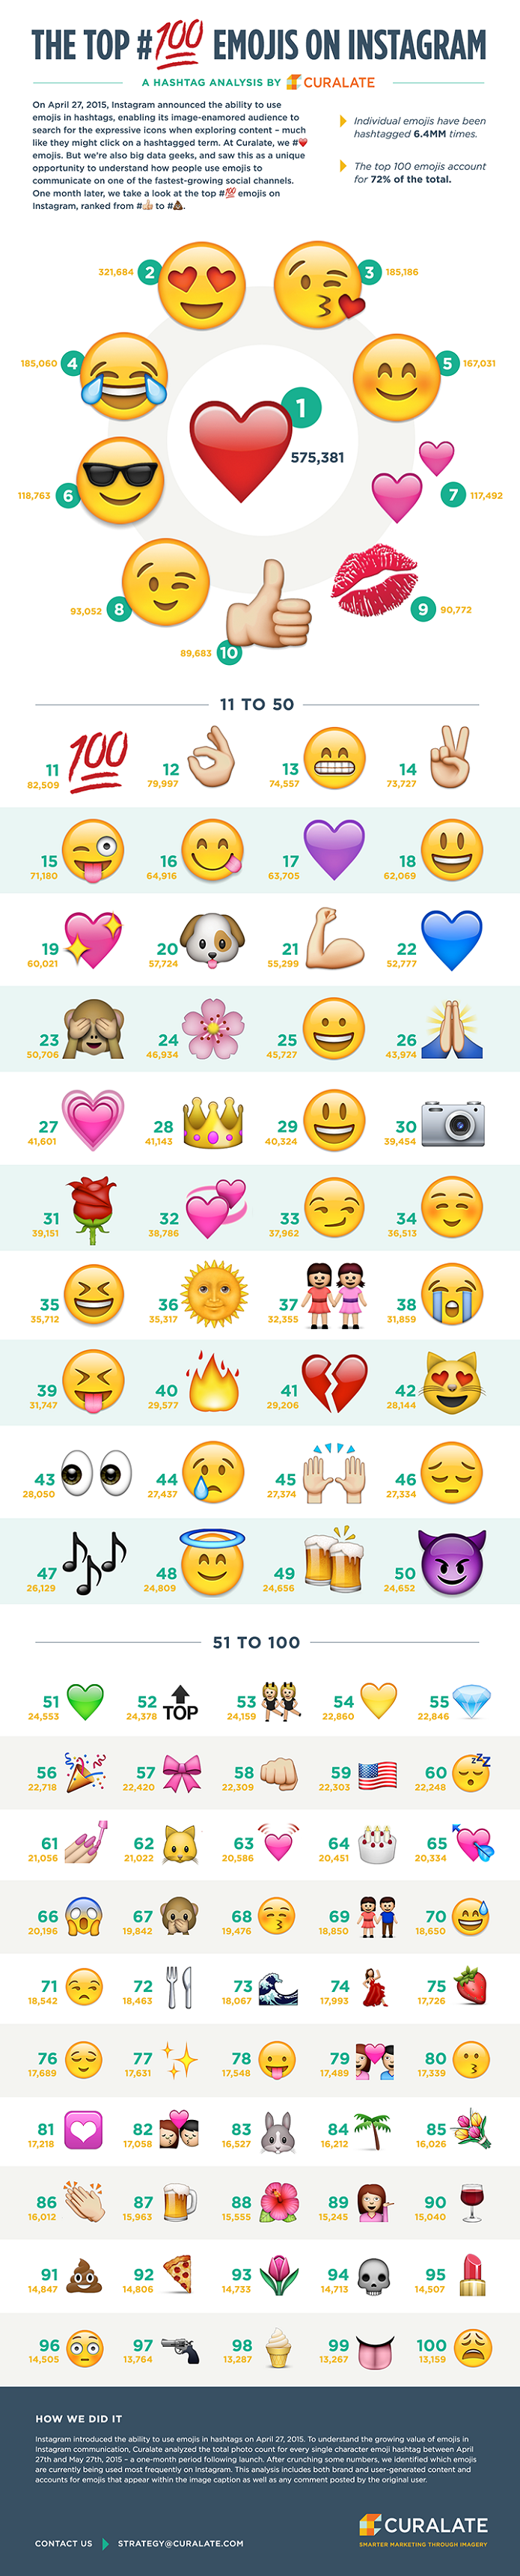 Lista com os 100 emoticons mais usados do IG (Foto: Divulga??o/Curalate)